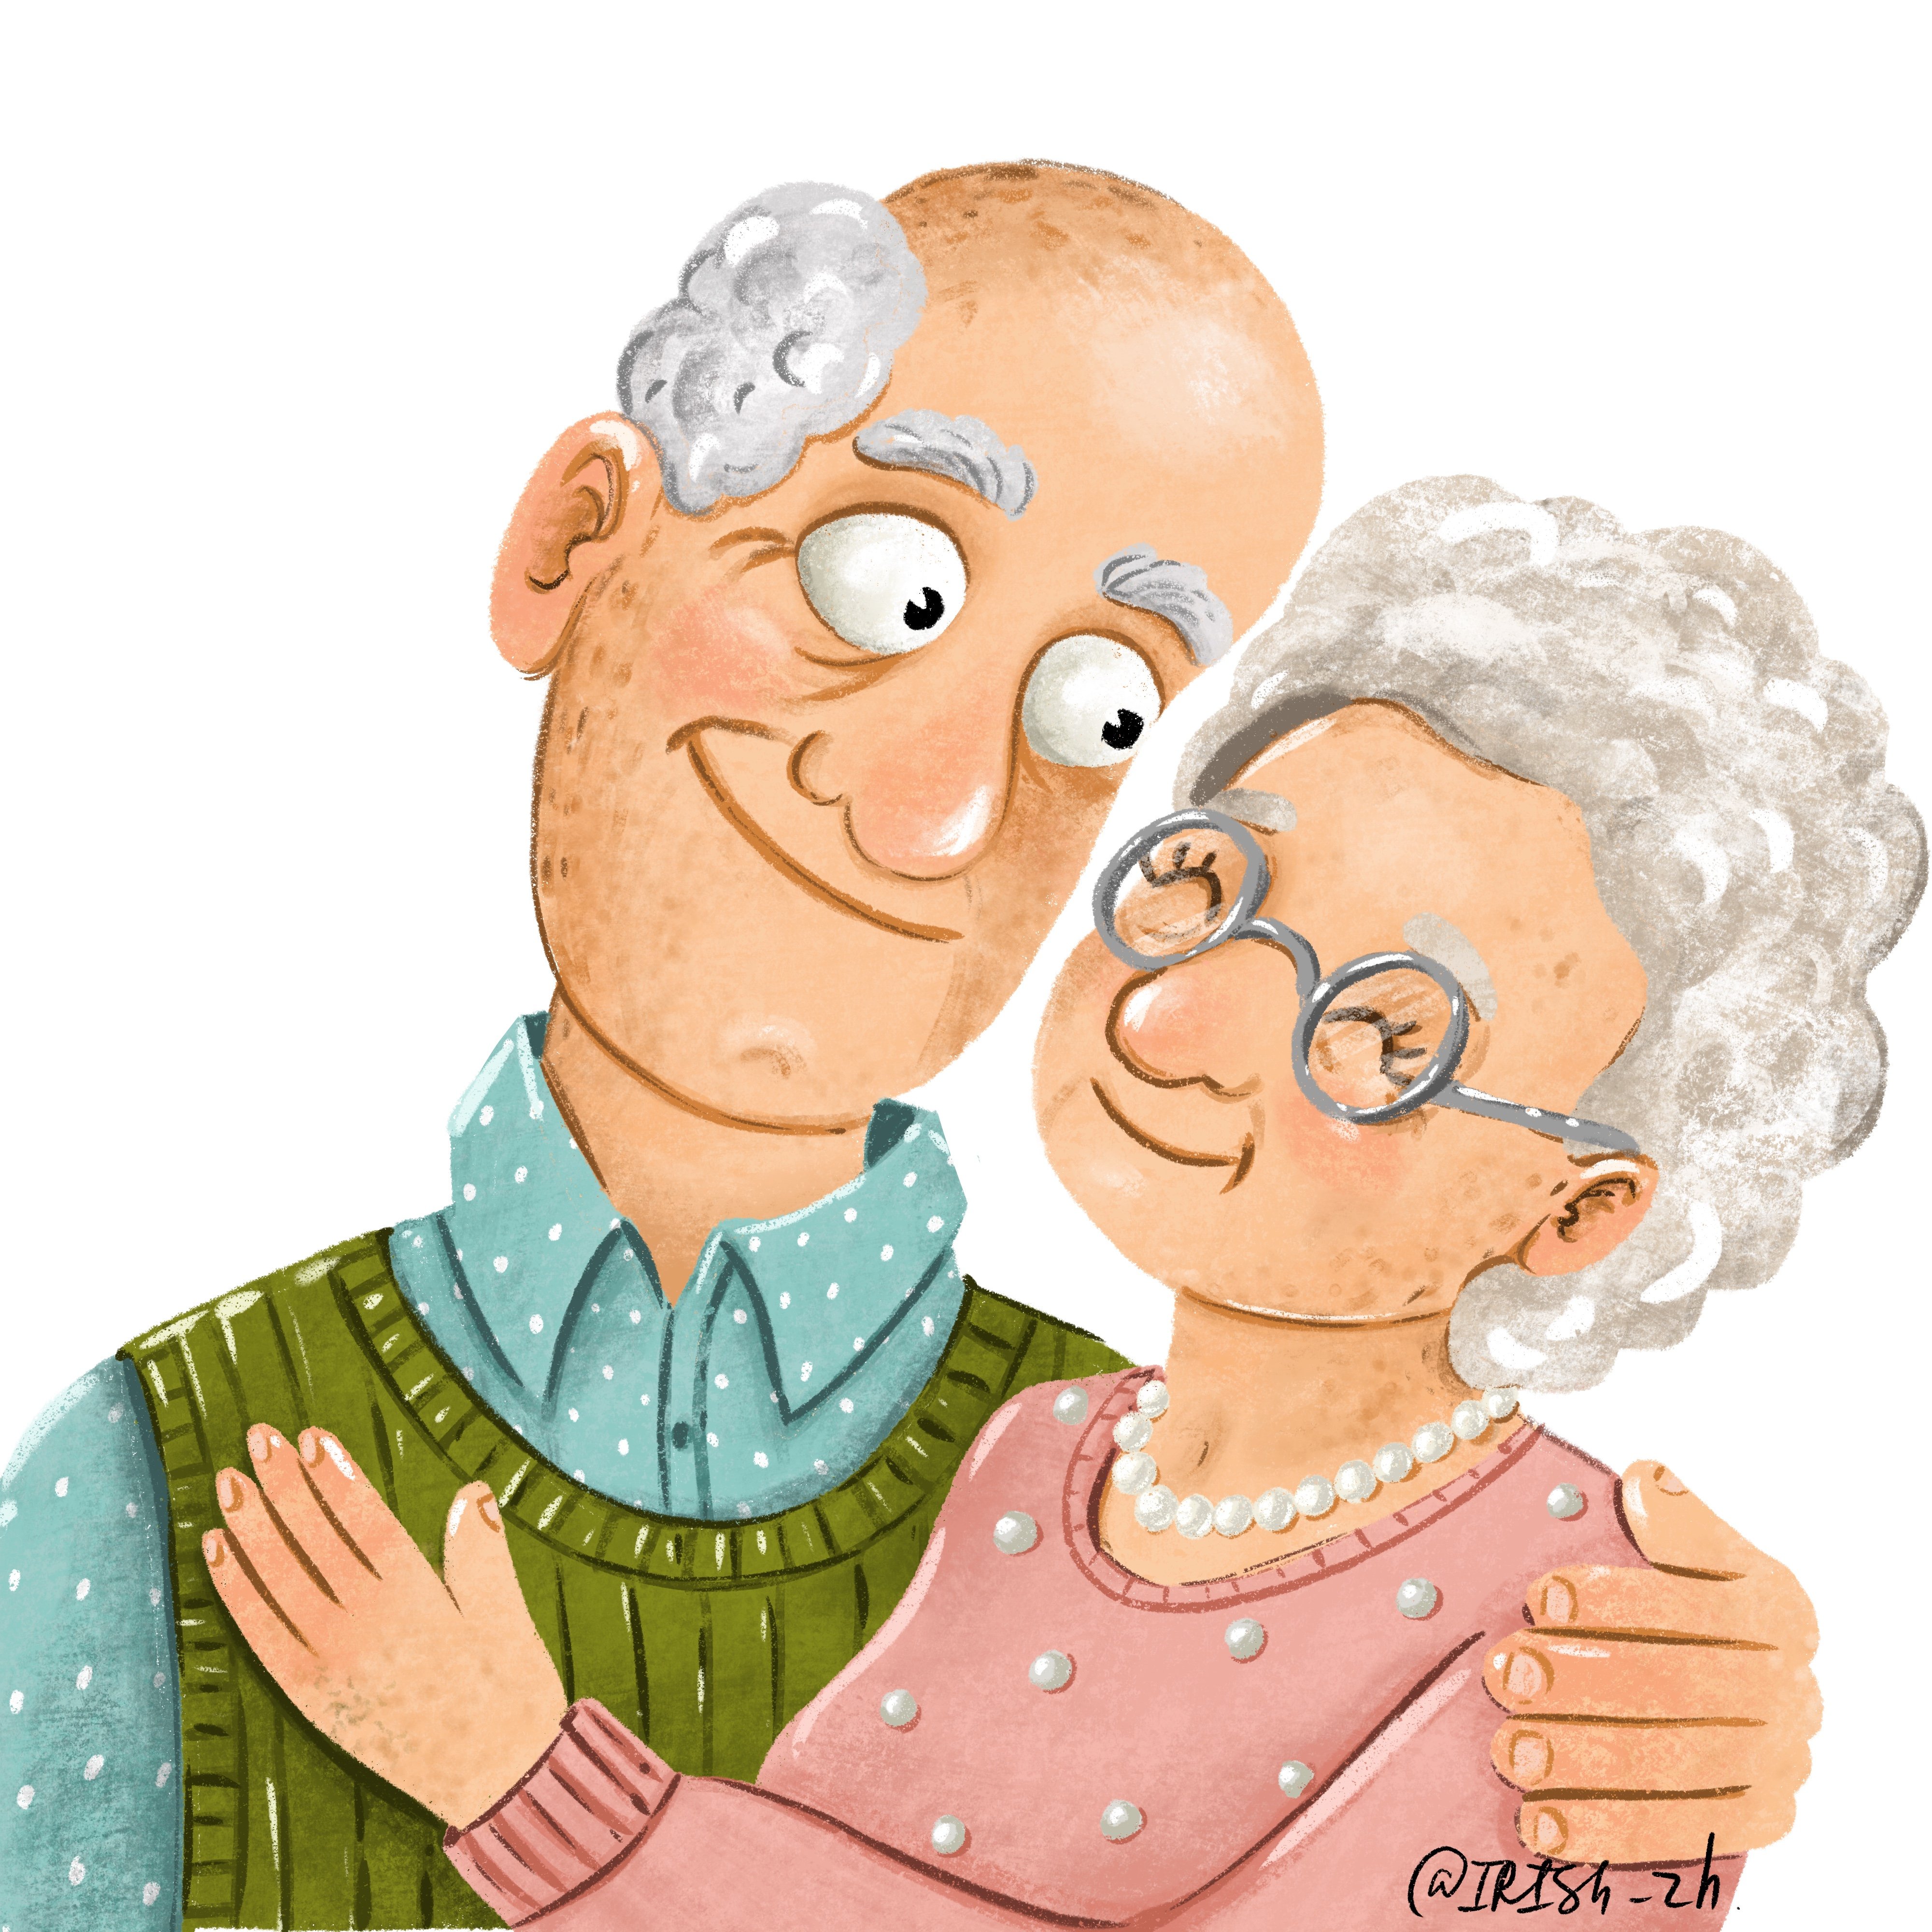 Красивые картинки бабушки и дедушки. Бабушка и дедушка. Бабушка рядышком с дедушкой. Бабуля и дедуля. Бабушка и дедушка иллюстрация.